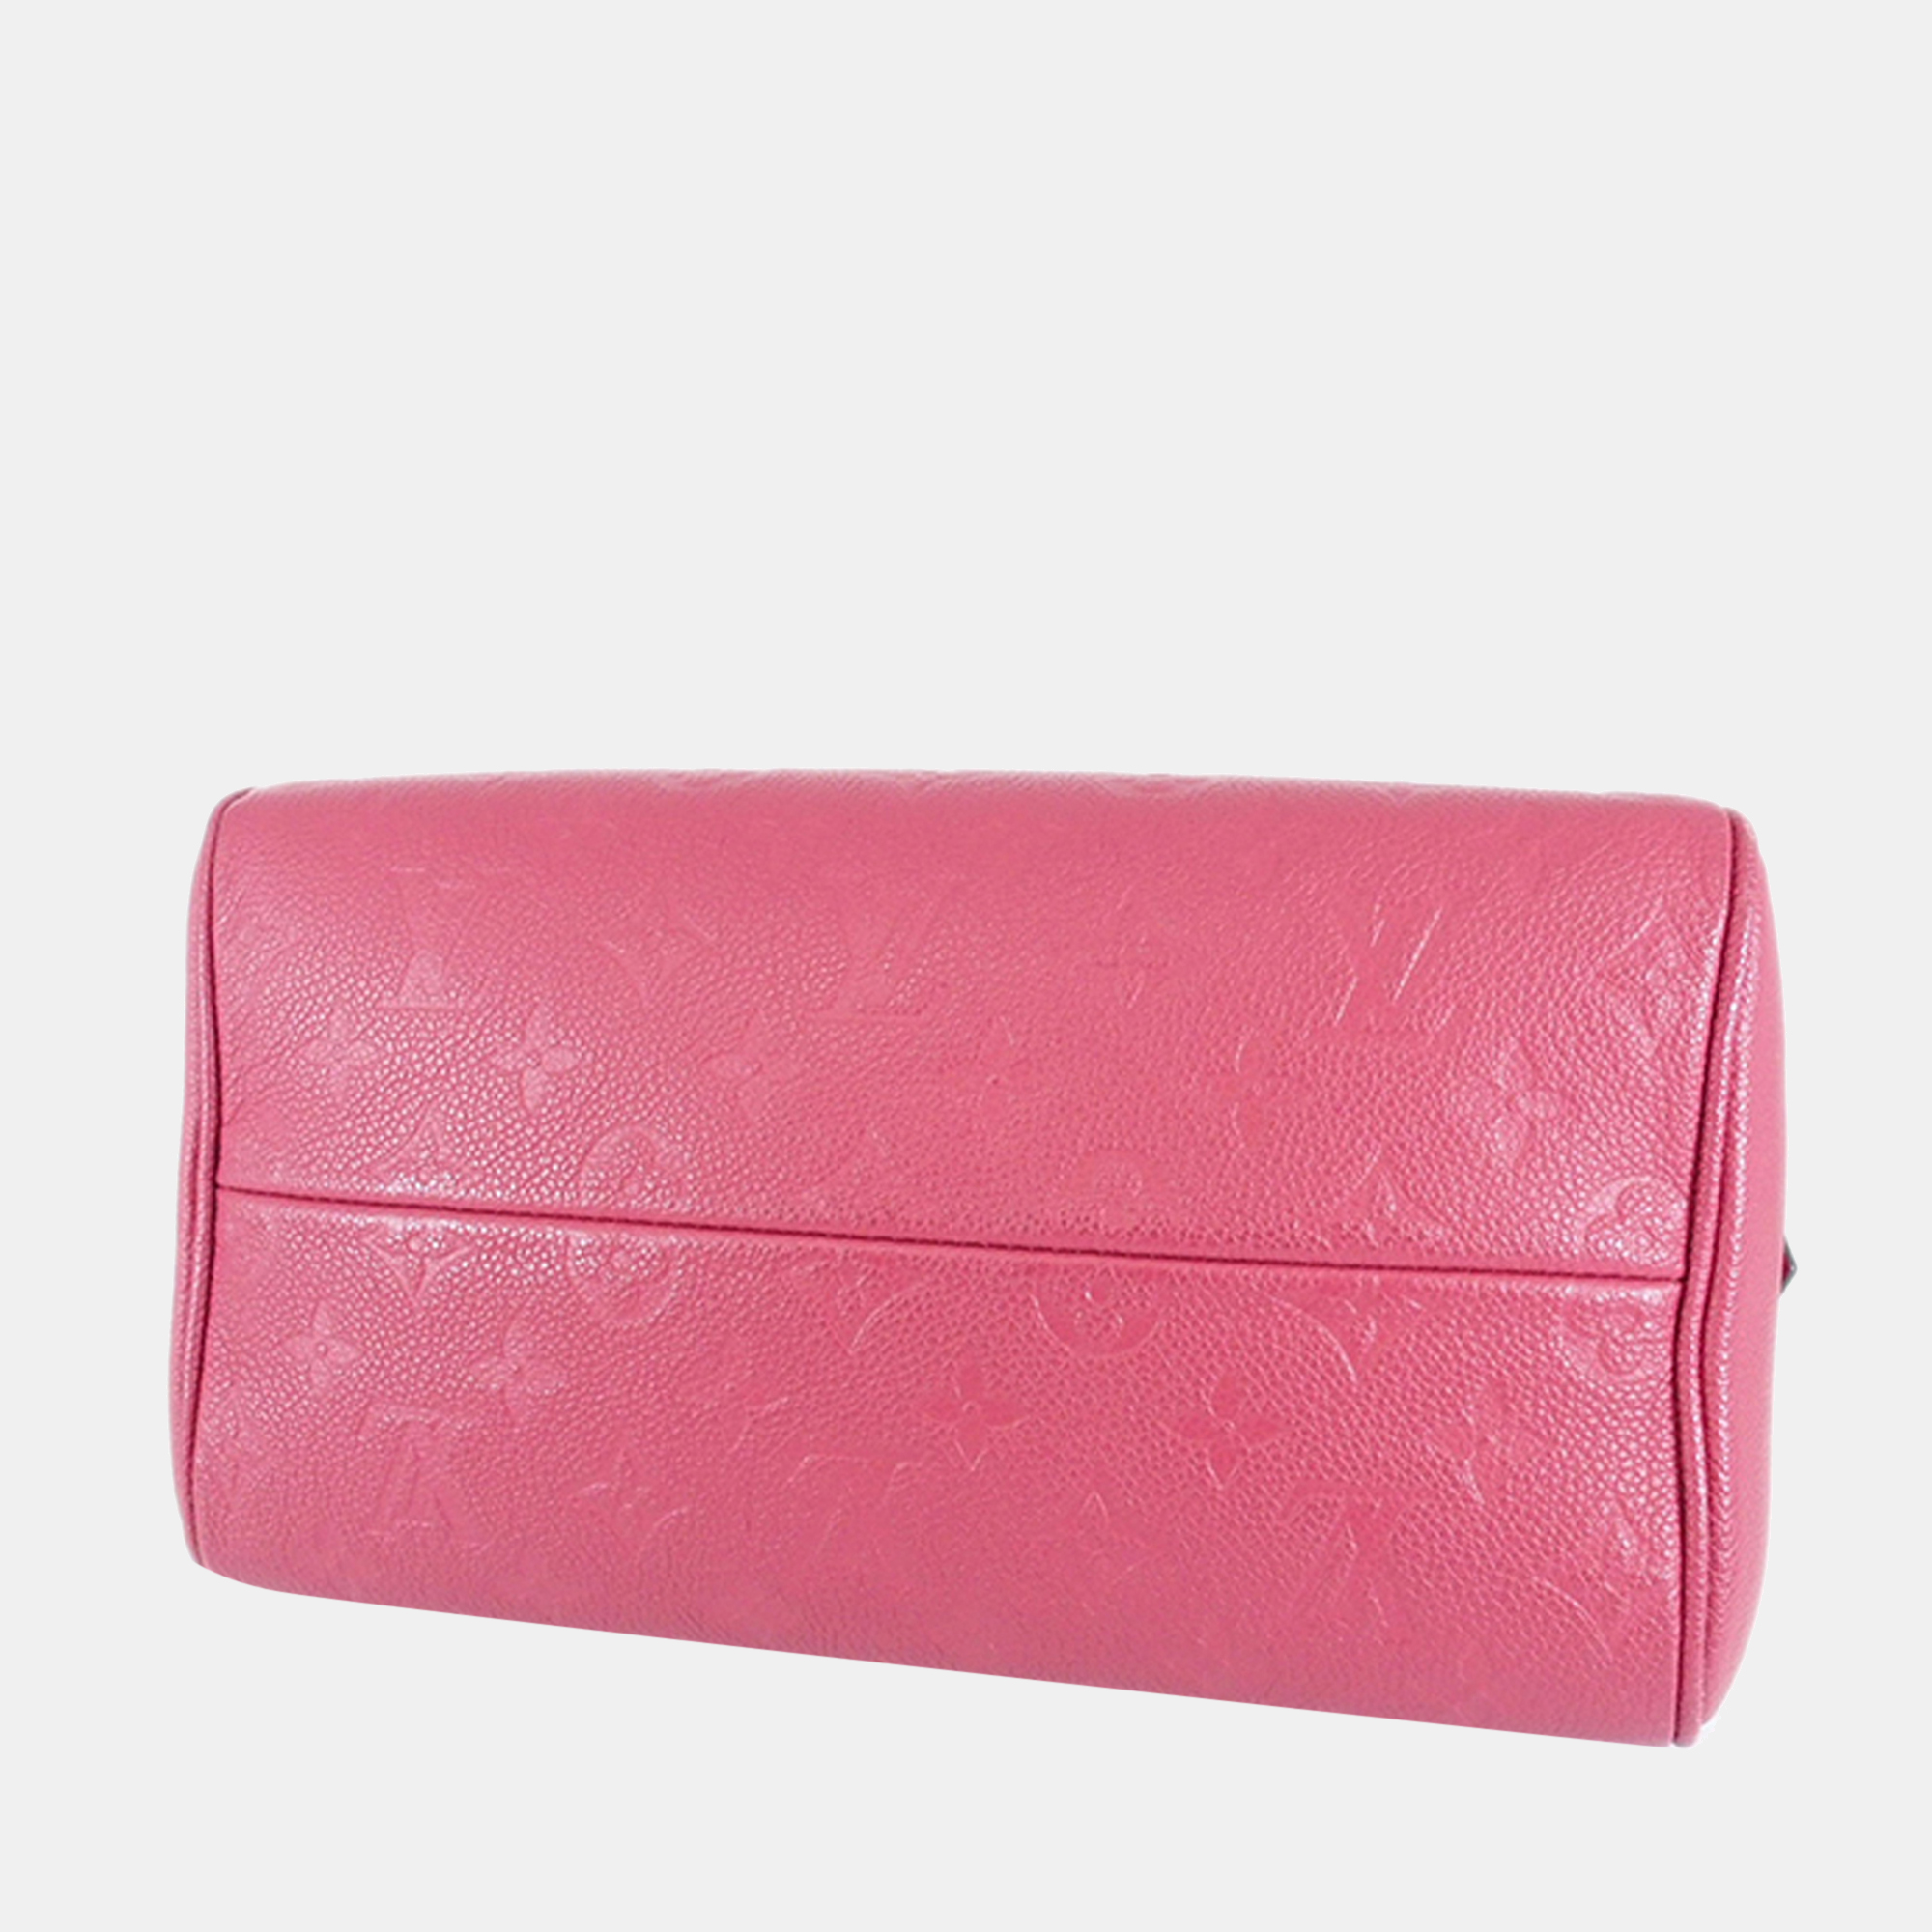 Louis Vuitton Pink Monogram Empreinte Speedy Bandouliere 25